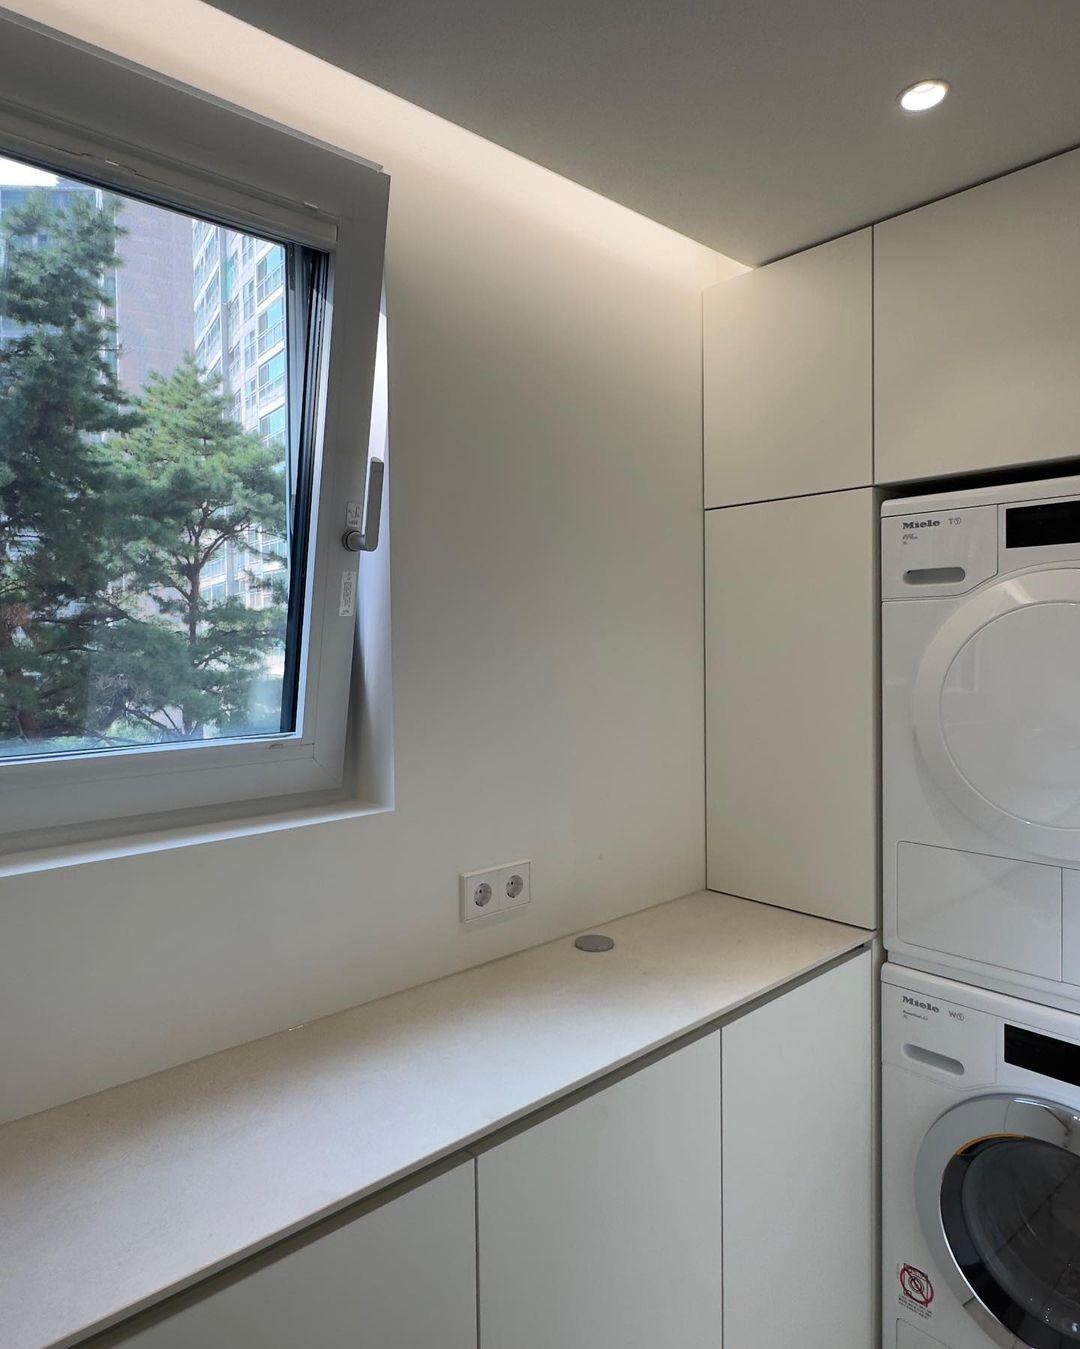 Phòng giặt 3㎡ được mẹ đảm ở Hàn Quốc sắp xếp lại vô cùng tinh tế - Ảnh 7.